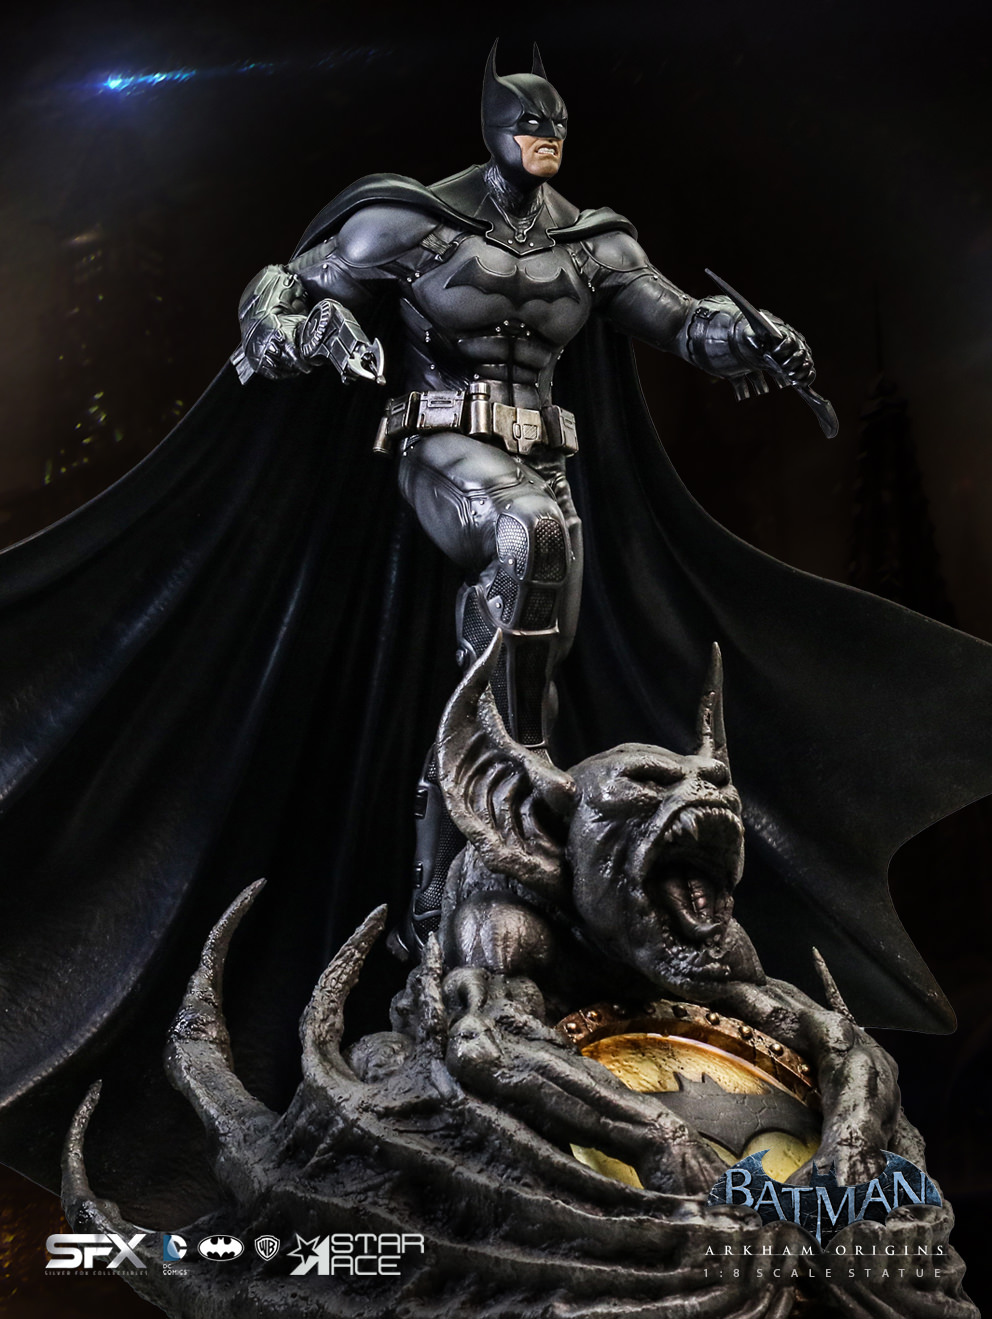 Batman Arkham Origins Exclusive Edition (Prototype Shown) View 10